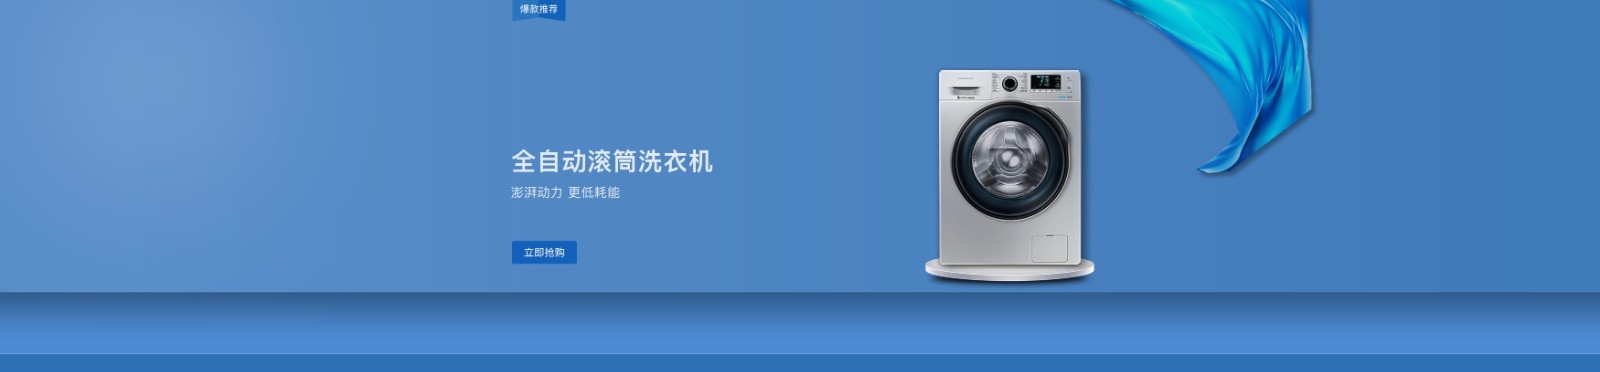 PC4洗衣机